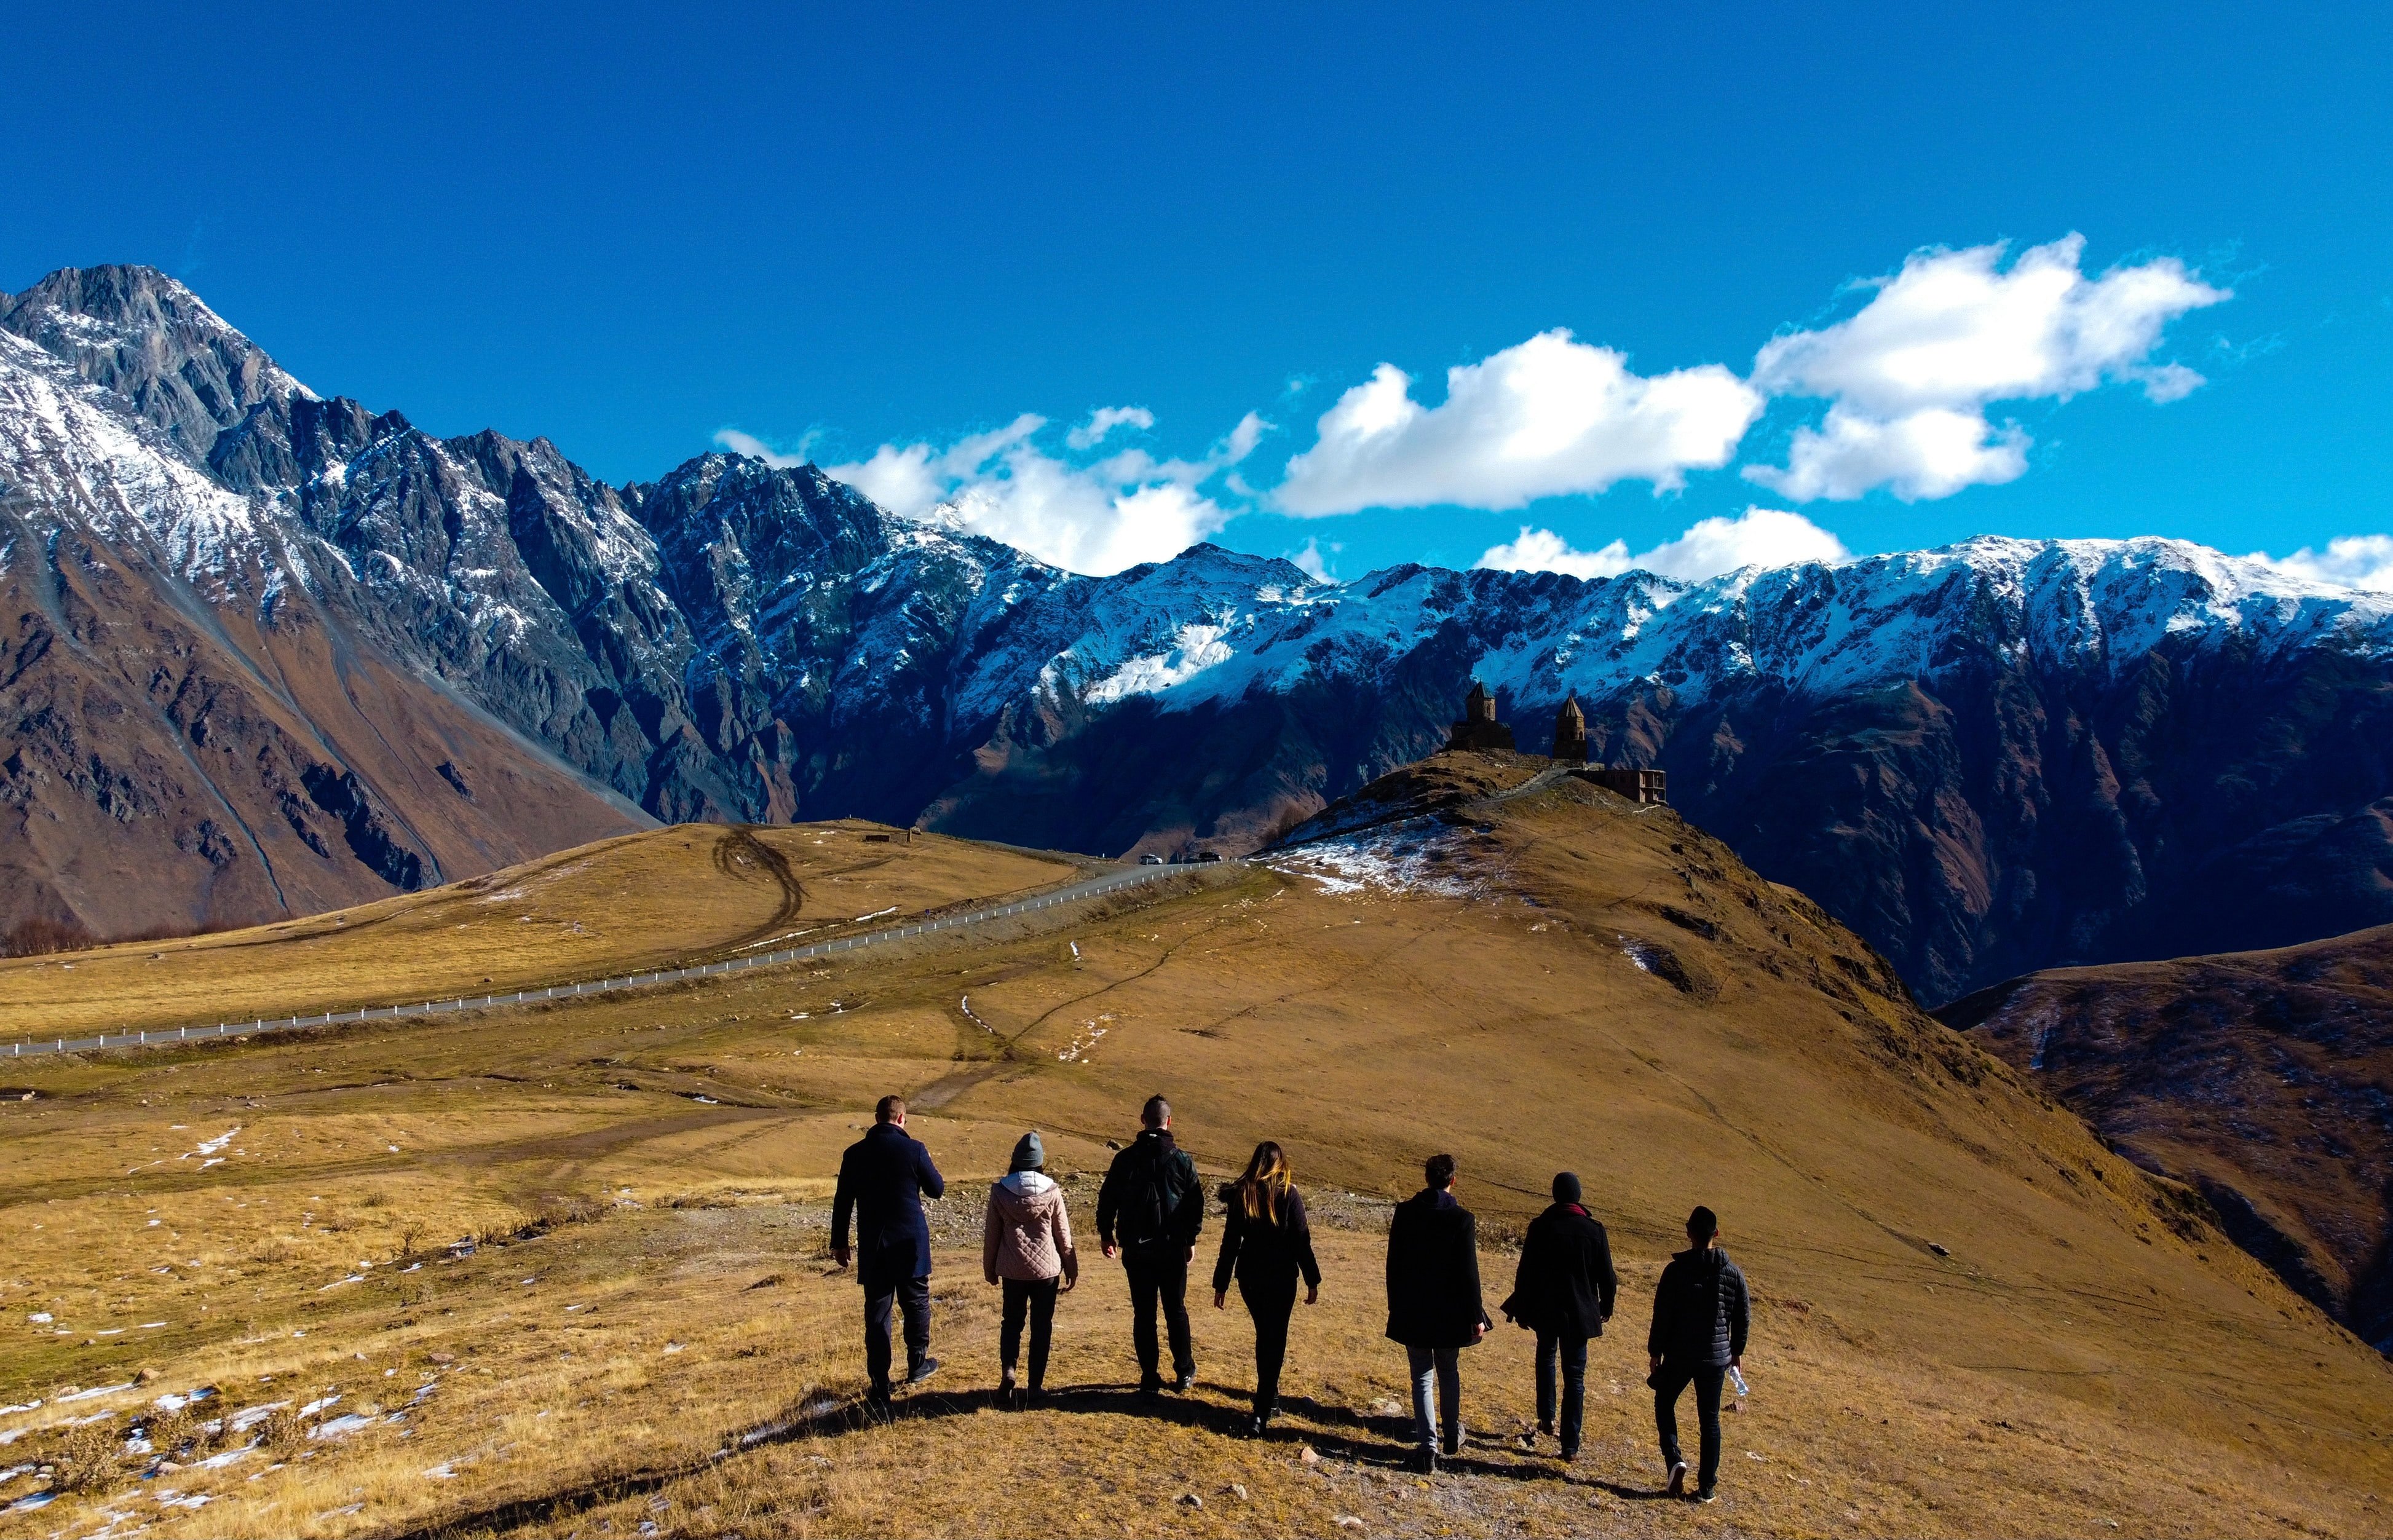 Reisegruppe vor einem Bergpanaorama. Gruppenreisen sparen eine Menge Geld und sind so sehr gut für euer Studierenden Budget